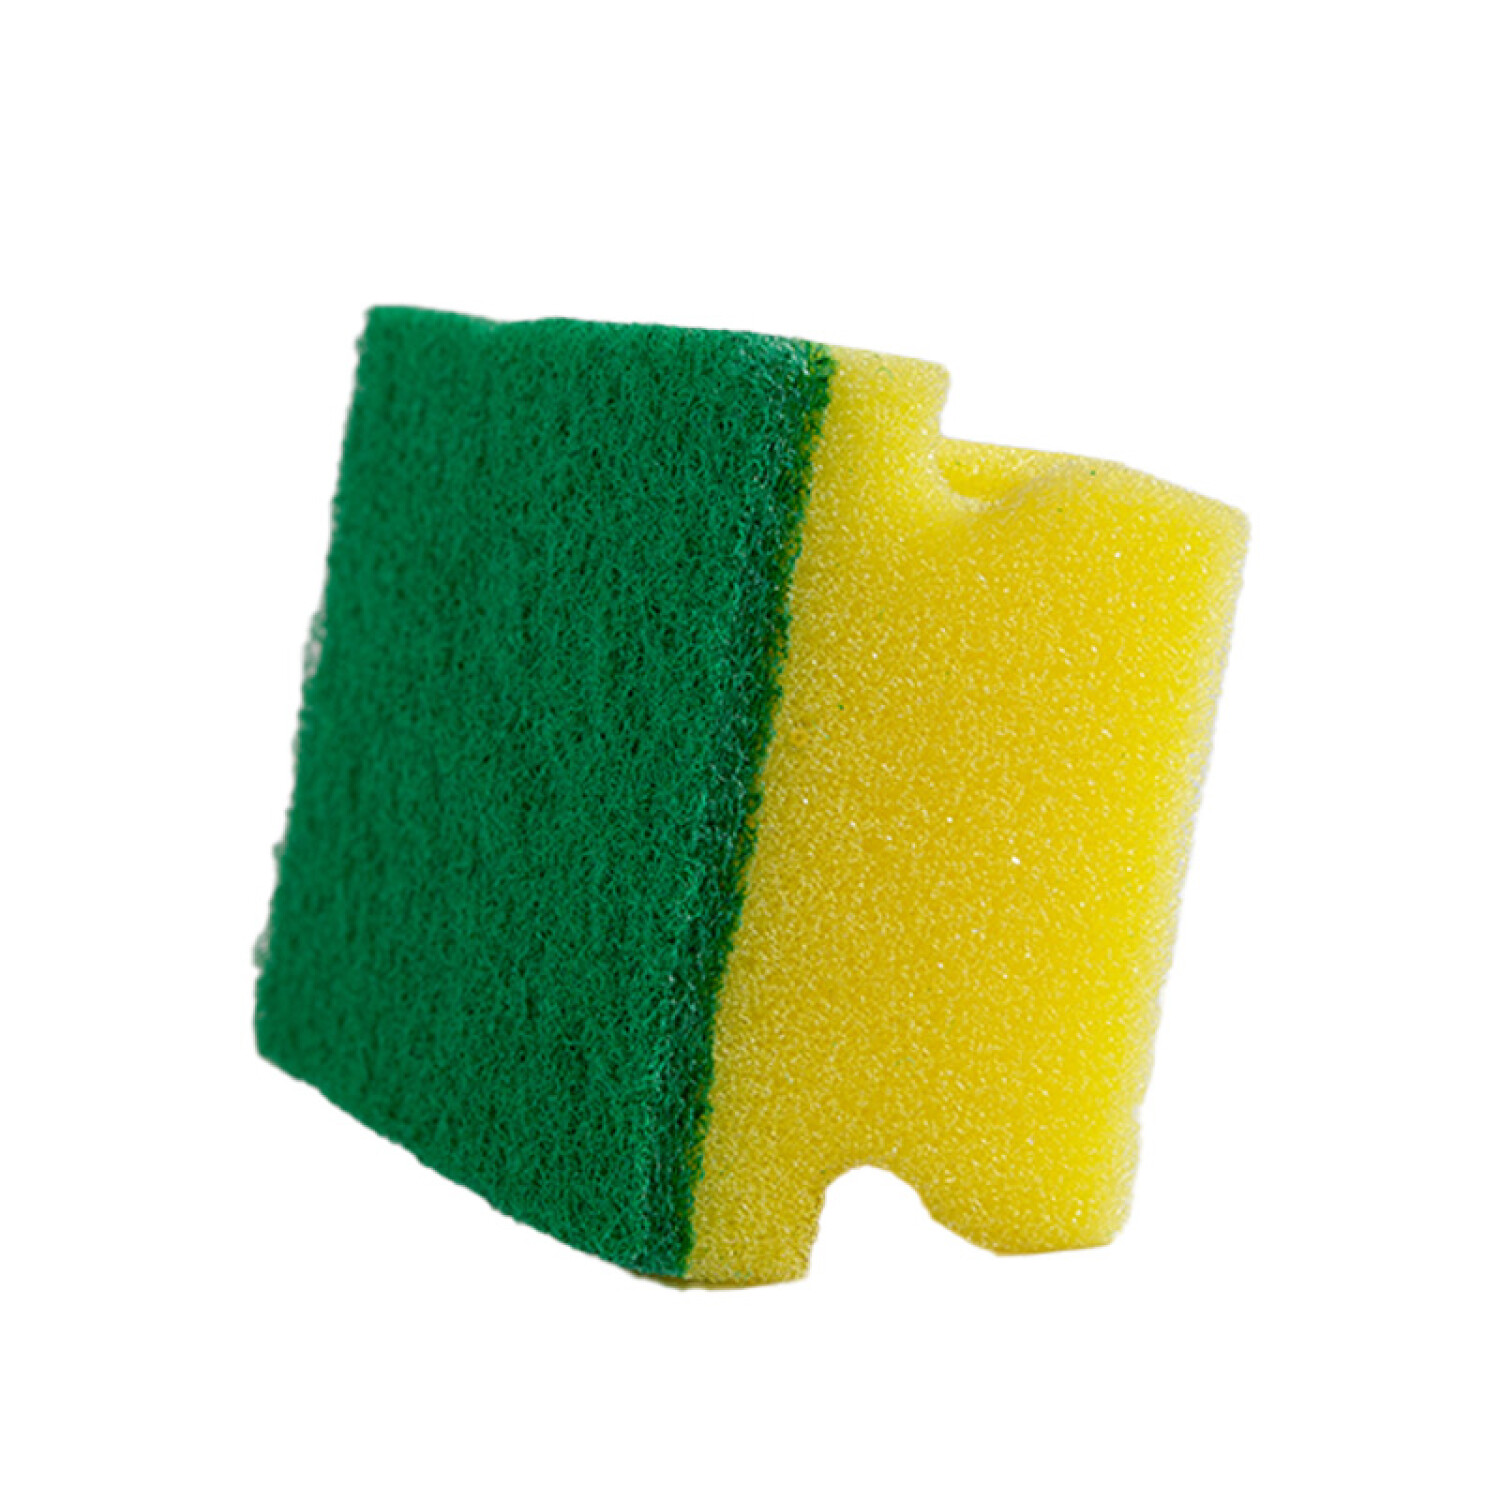 Esponja de cocina gruesa x 3 unidades - amarilla y verde